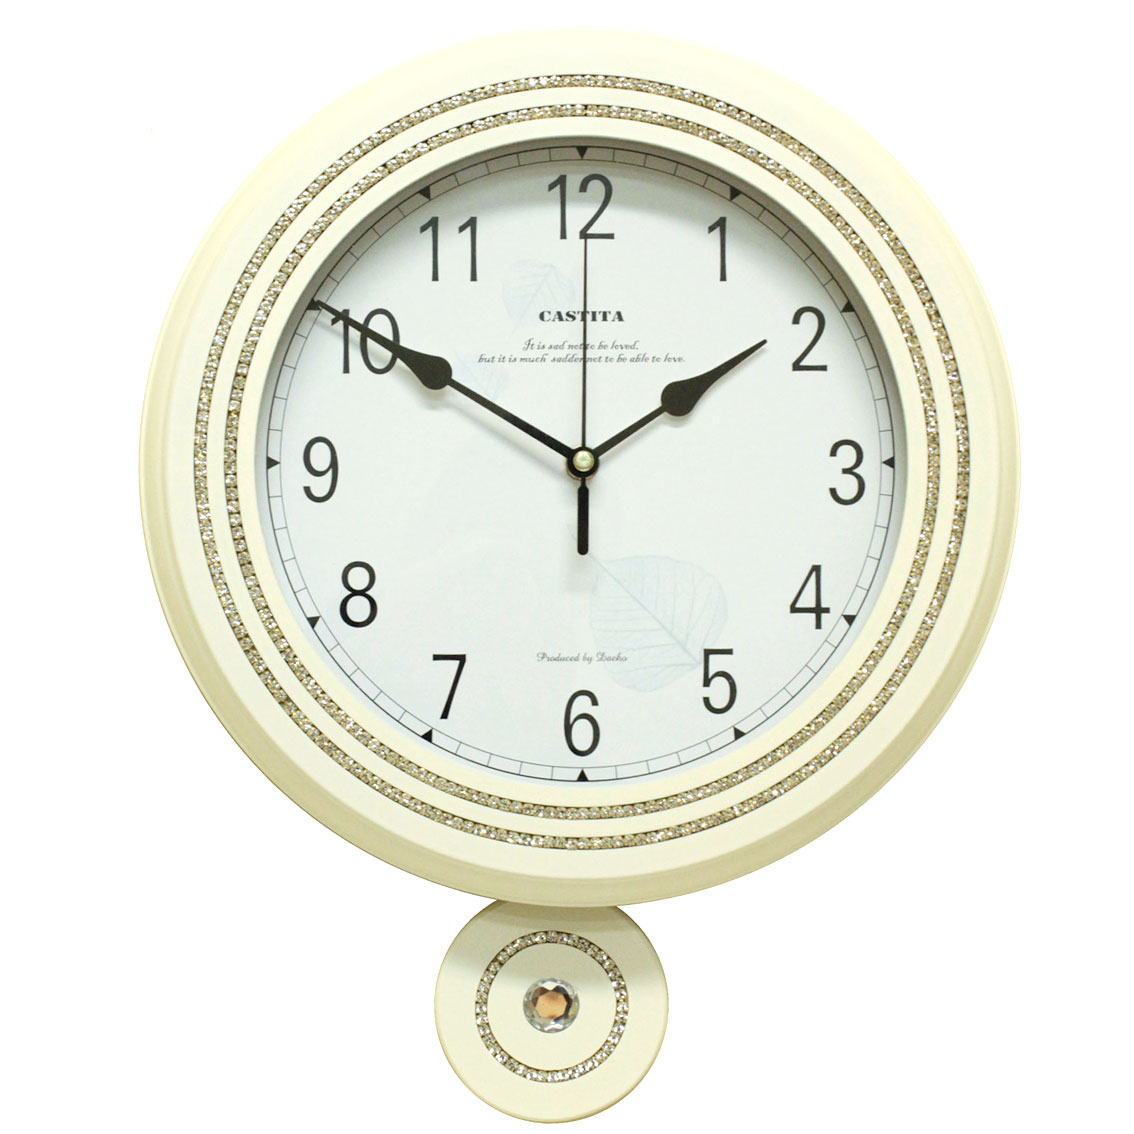 Фото часов Часы настенные Castita 116W            (Код: 116W)